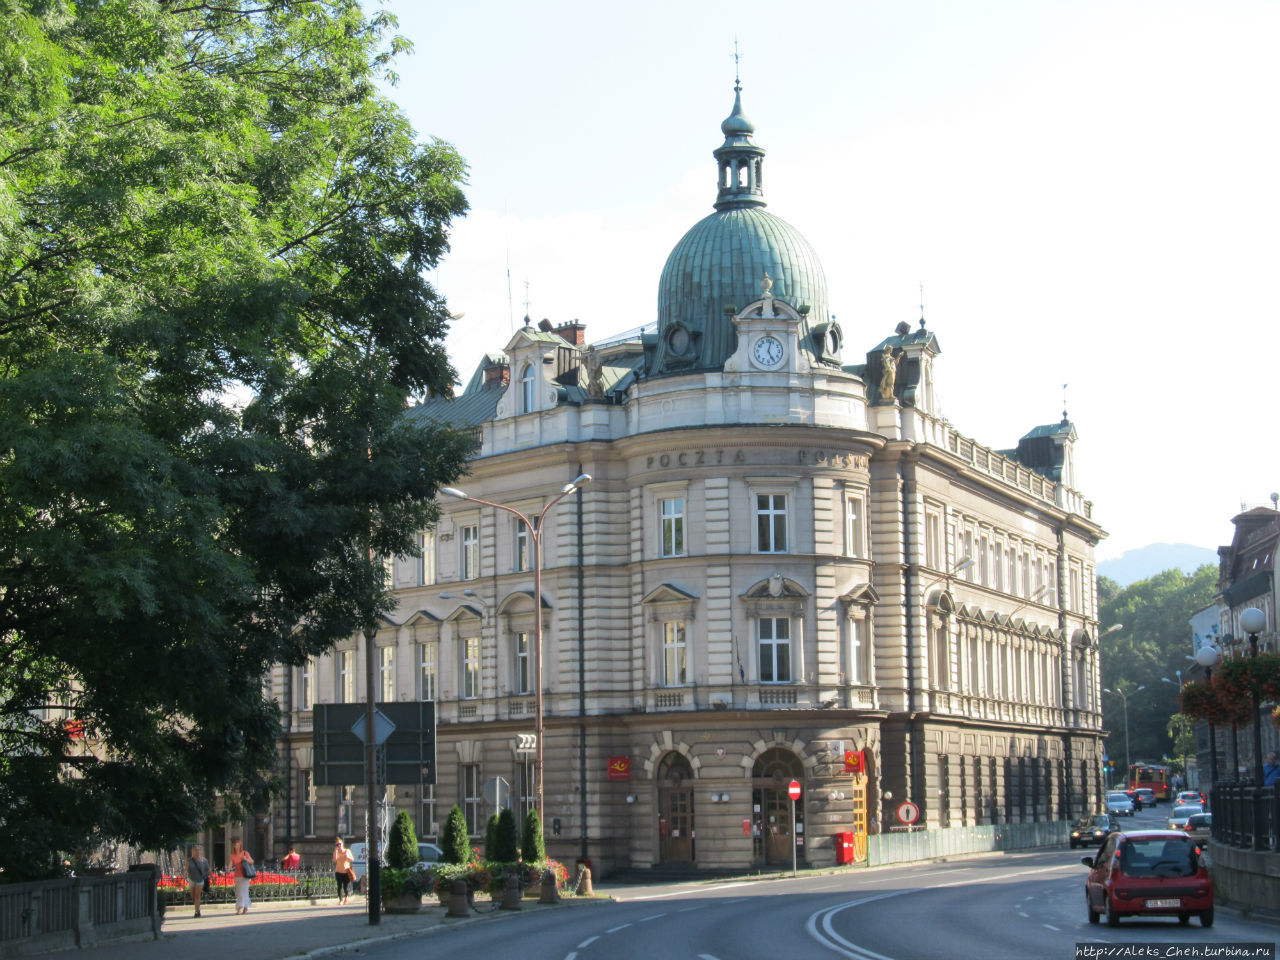 Здание почты в Бельско Бельско-Бяла, Польша